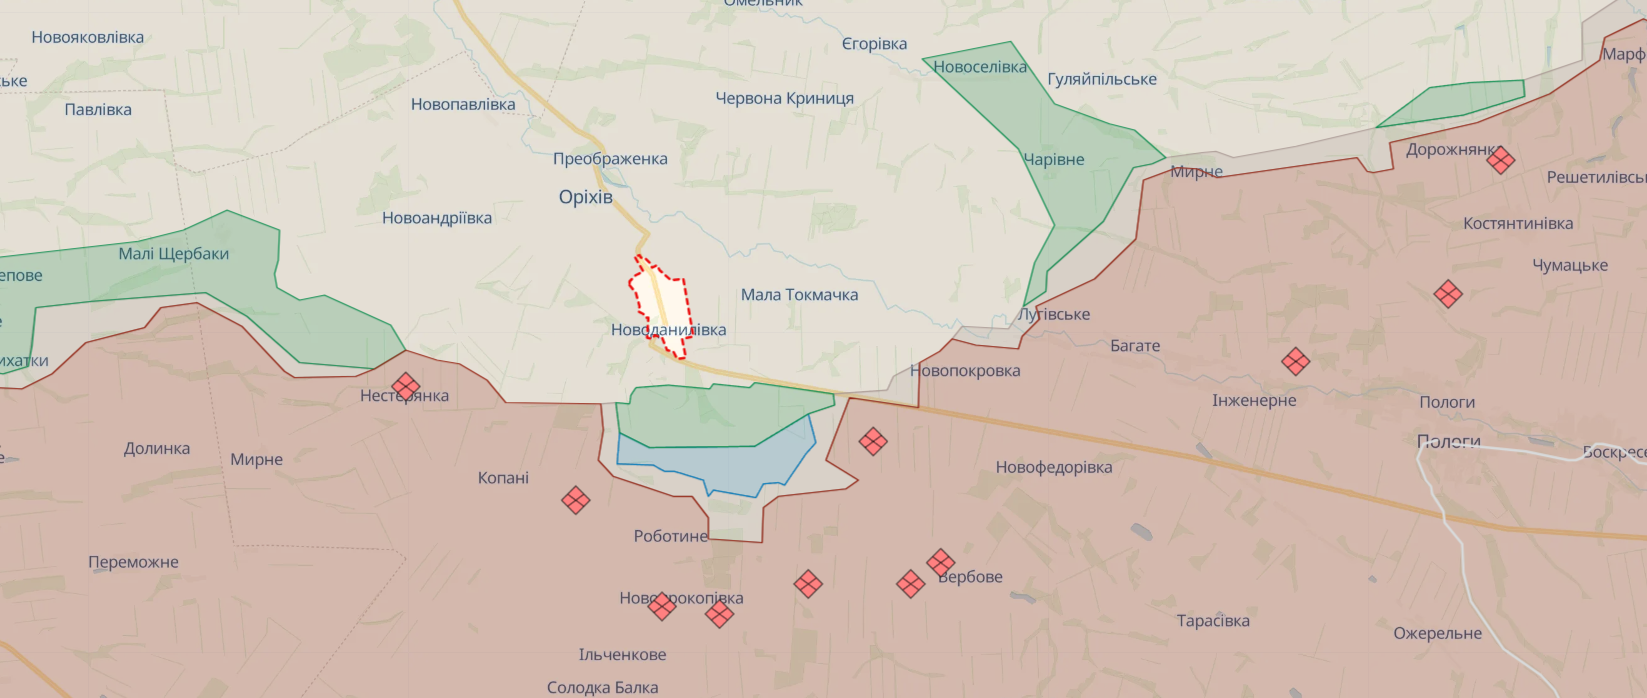 Оккупанты обстреляли химическими боеприпасами поселок под Ореховым, чтобы остановить движение ВСУ: подробности